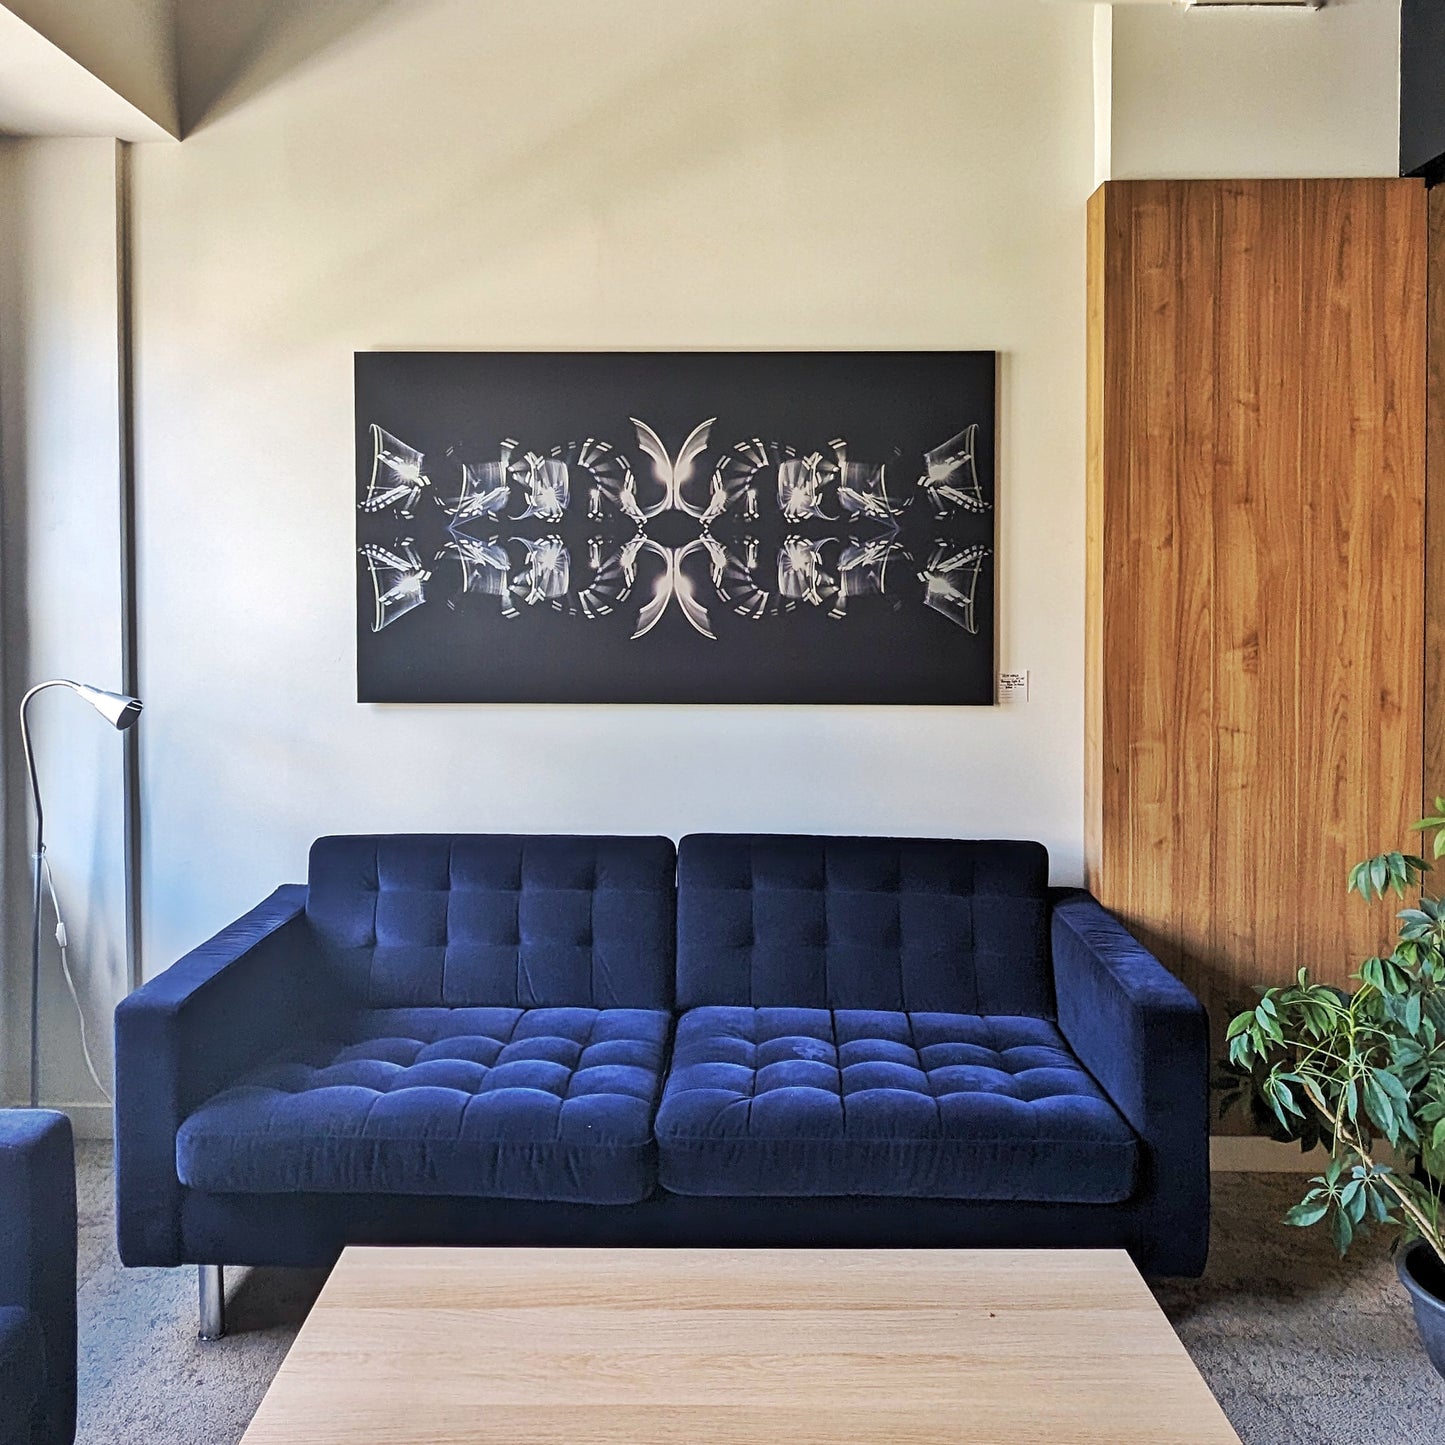 Impression d’art light painting sur planche métallique - Décoration d’art de luxe pour la maison - Journey par Jeff Malo